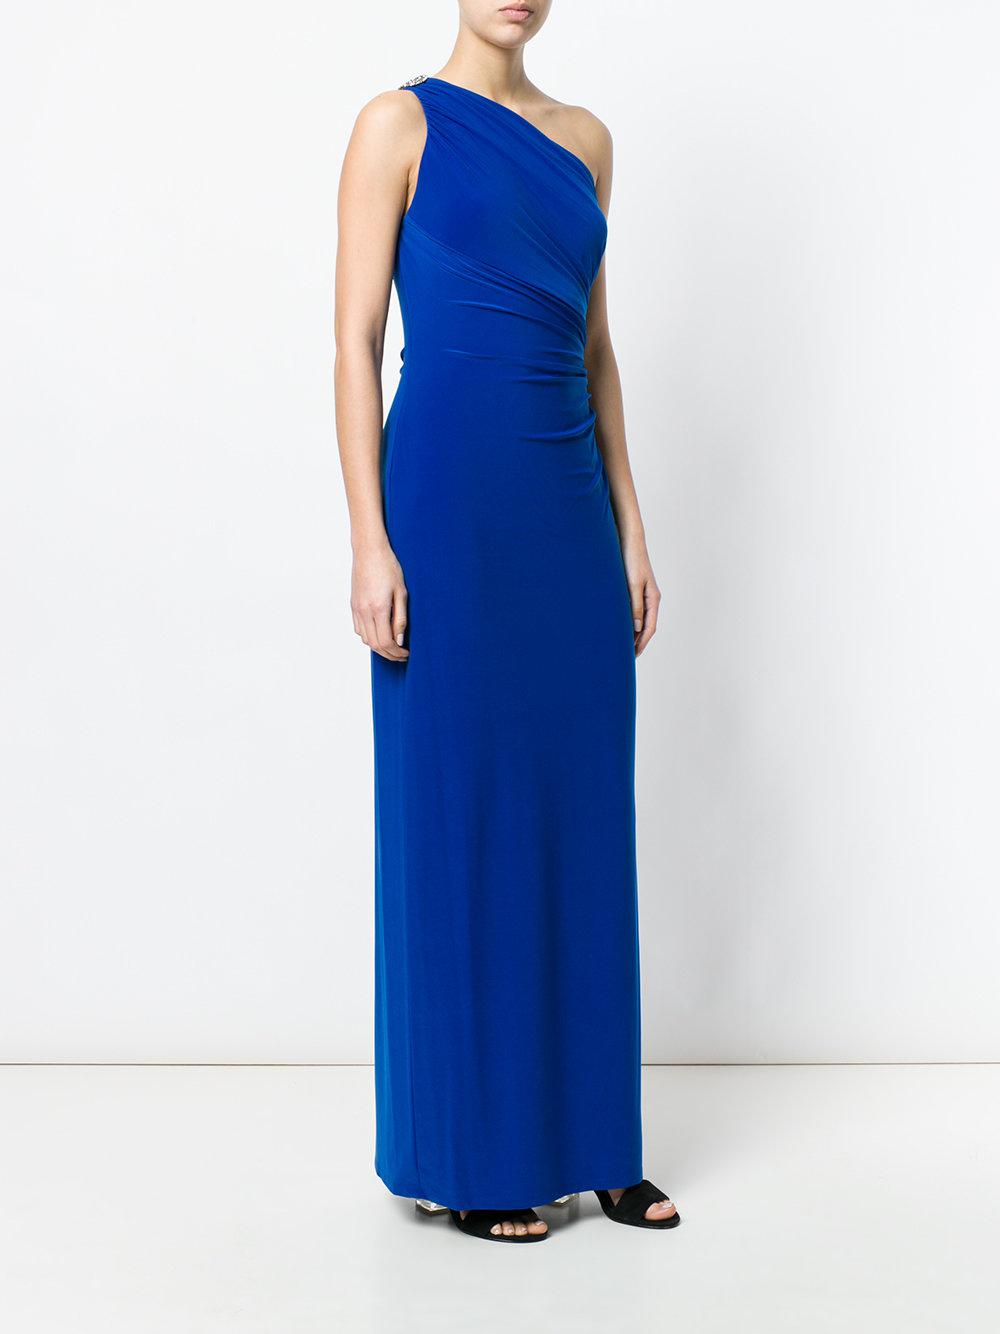 Lauren by Ralph Lauren Synthetic One Shoulder Gown in Blue - Lyst